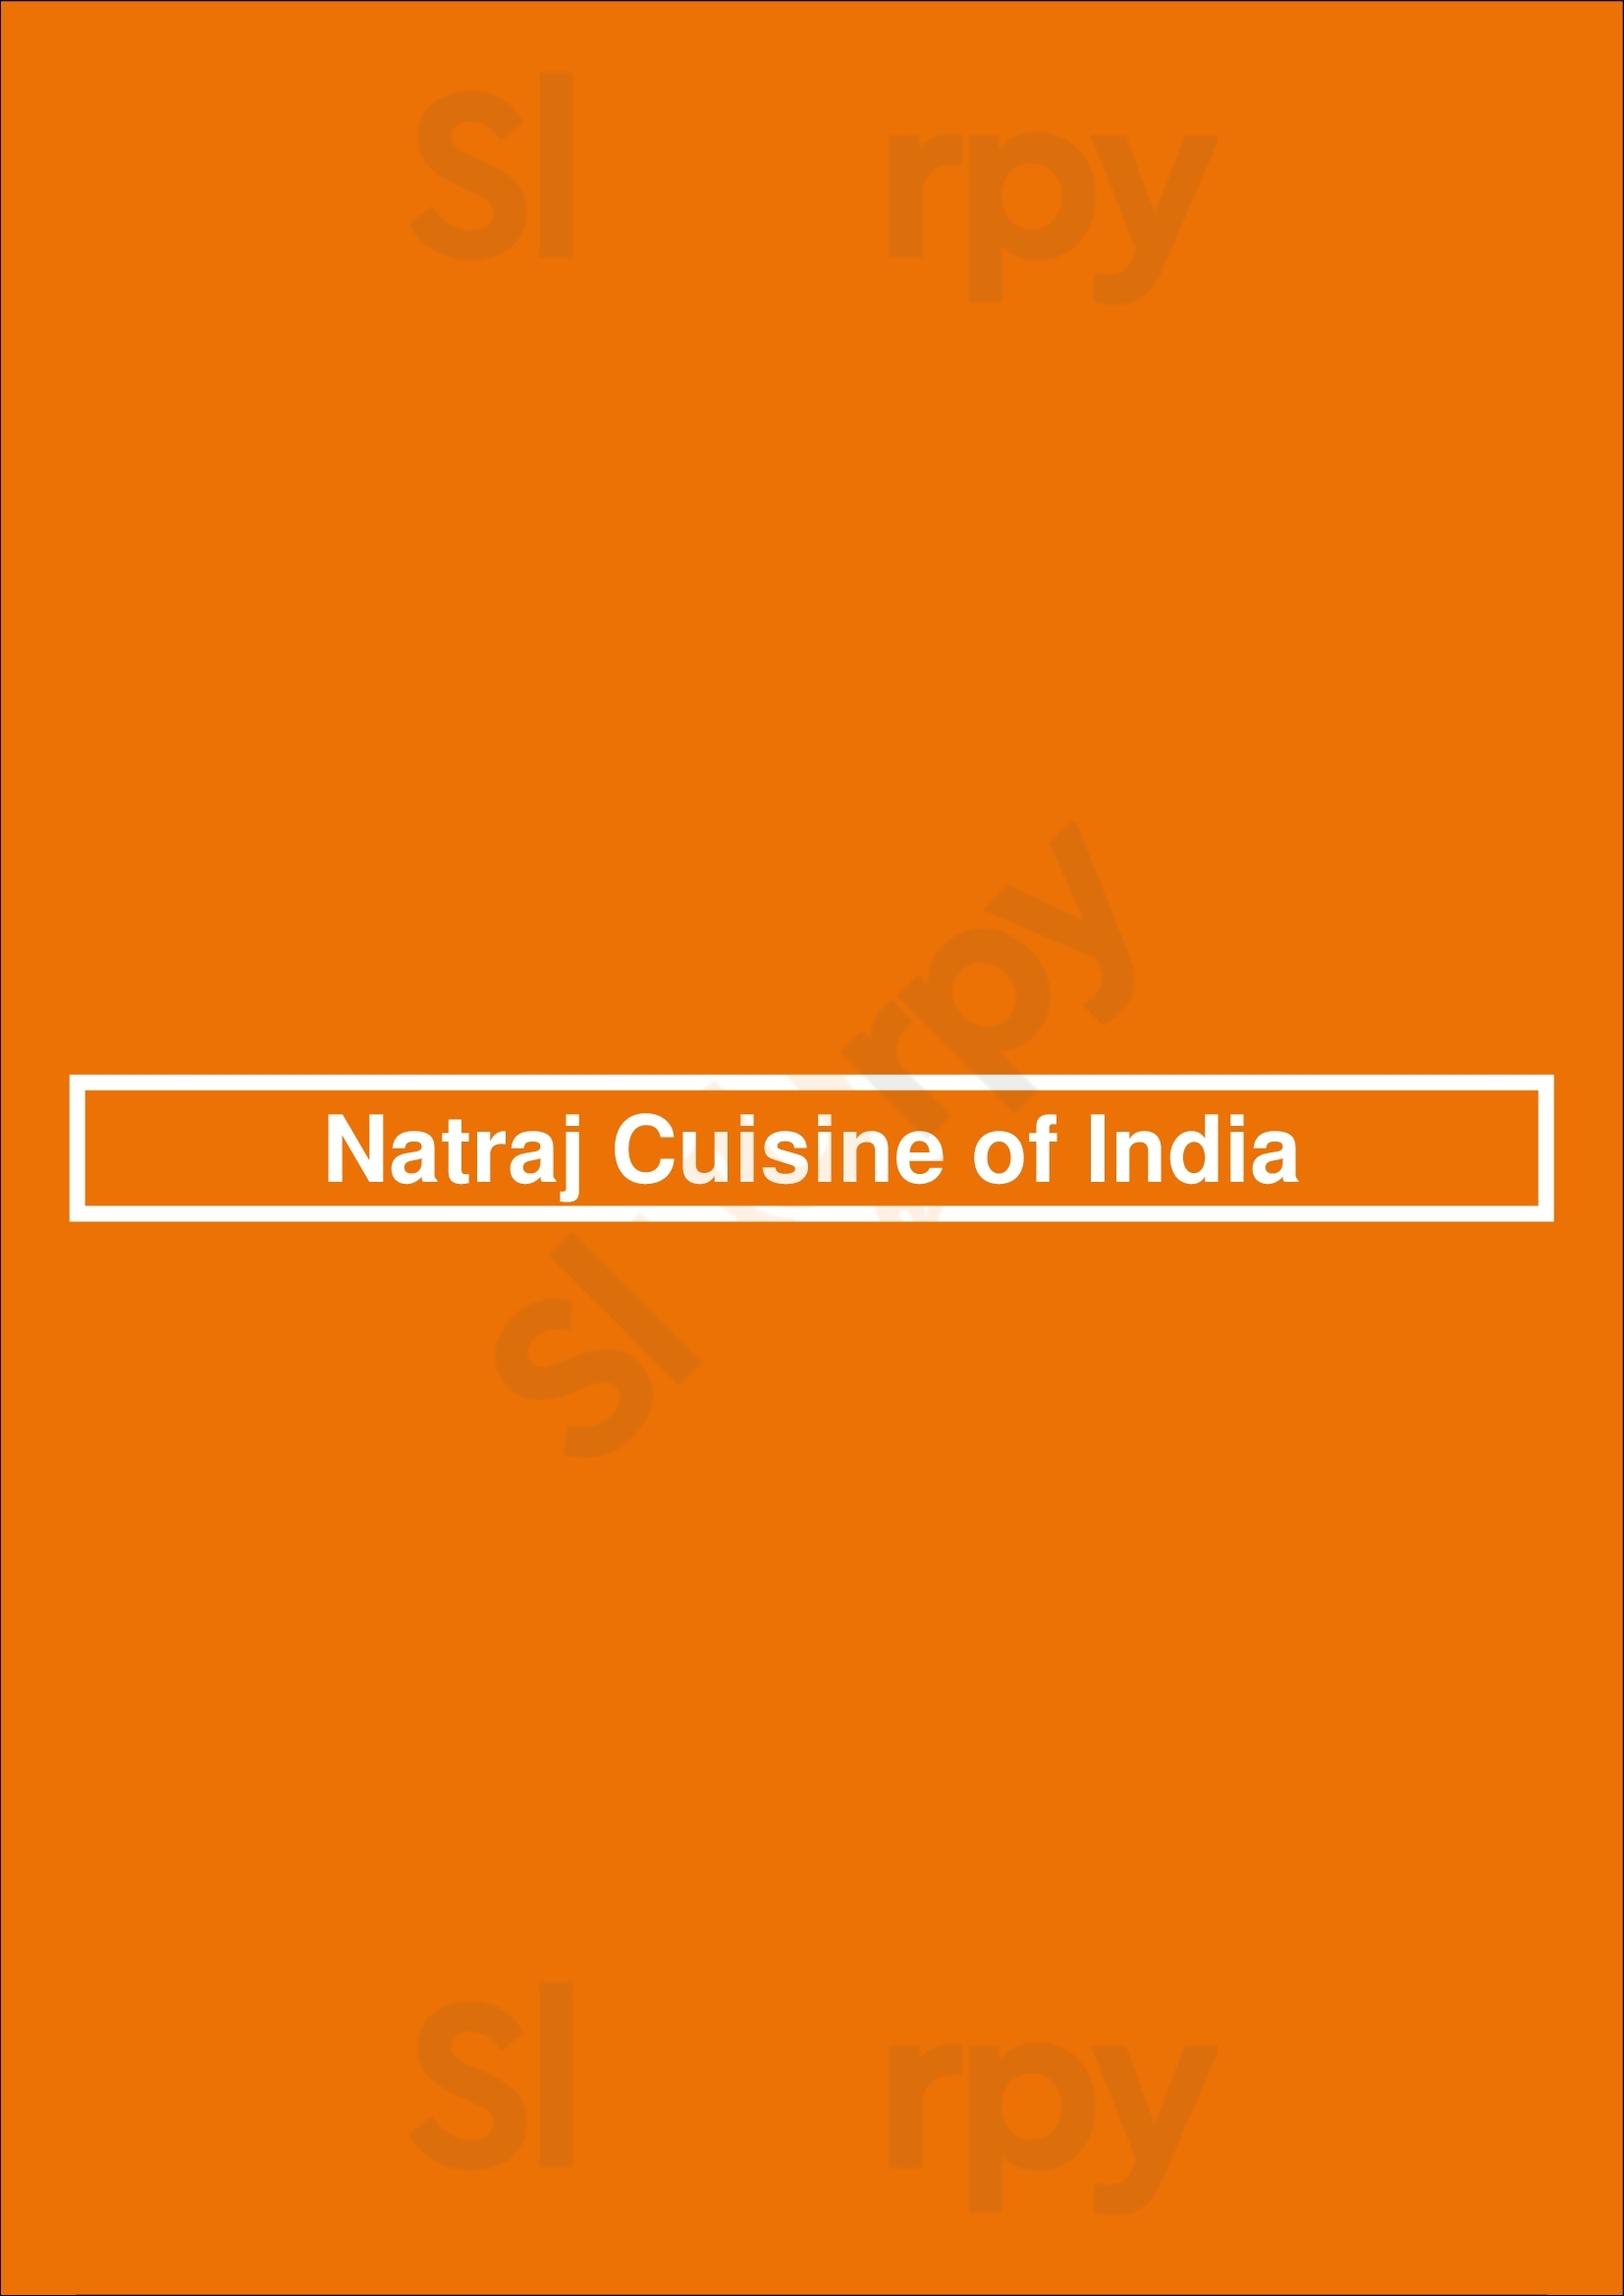 Natraj Cuisine Of India Long Beach Menu - 1